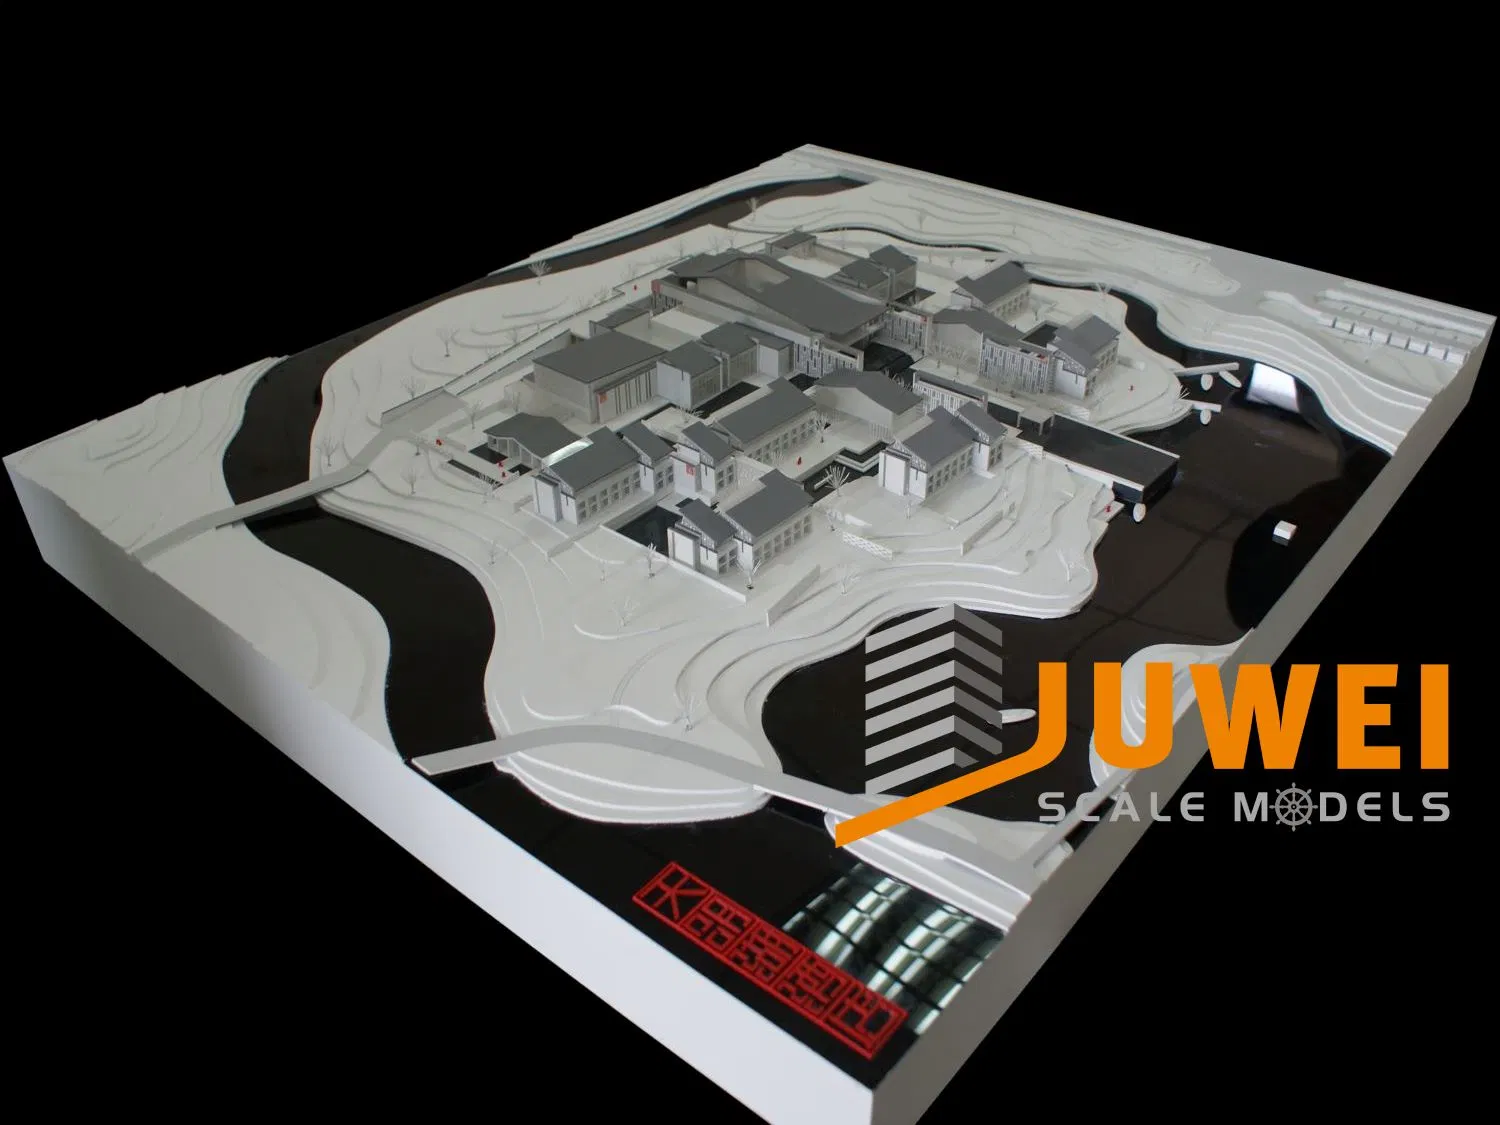 Plastic Hotel Building Design Model Maker (JW-91)